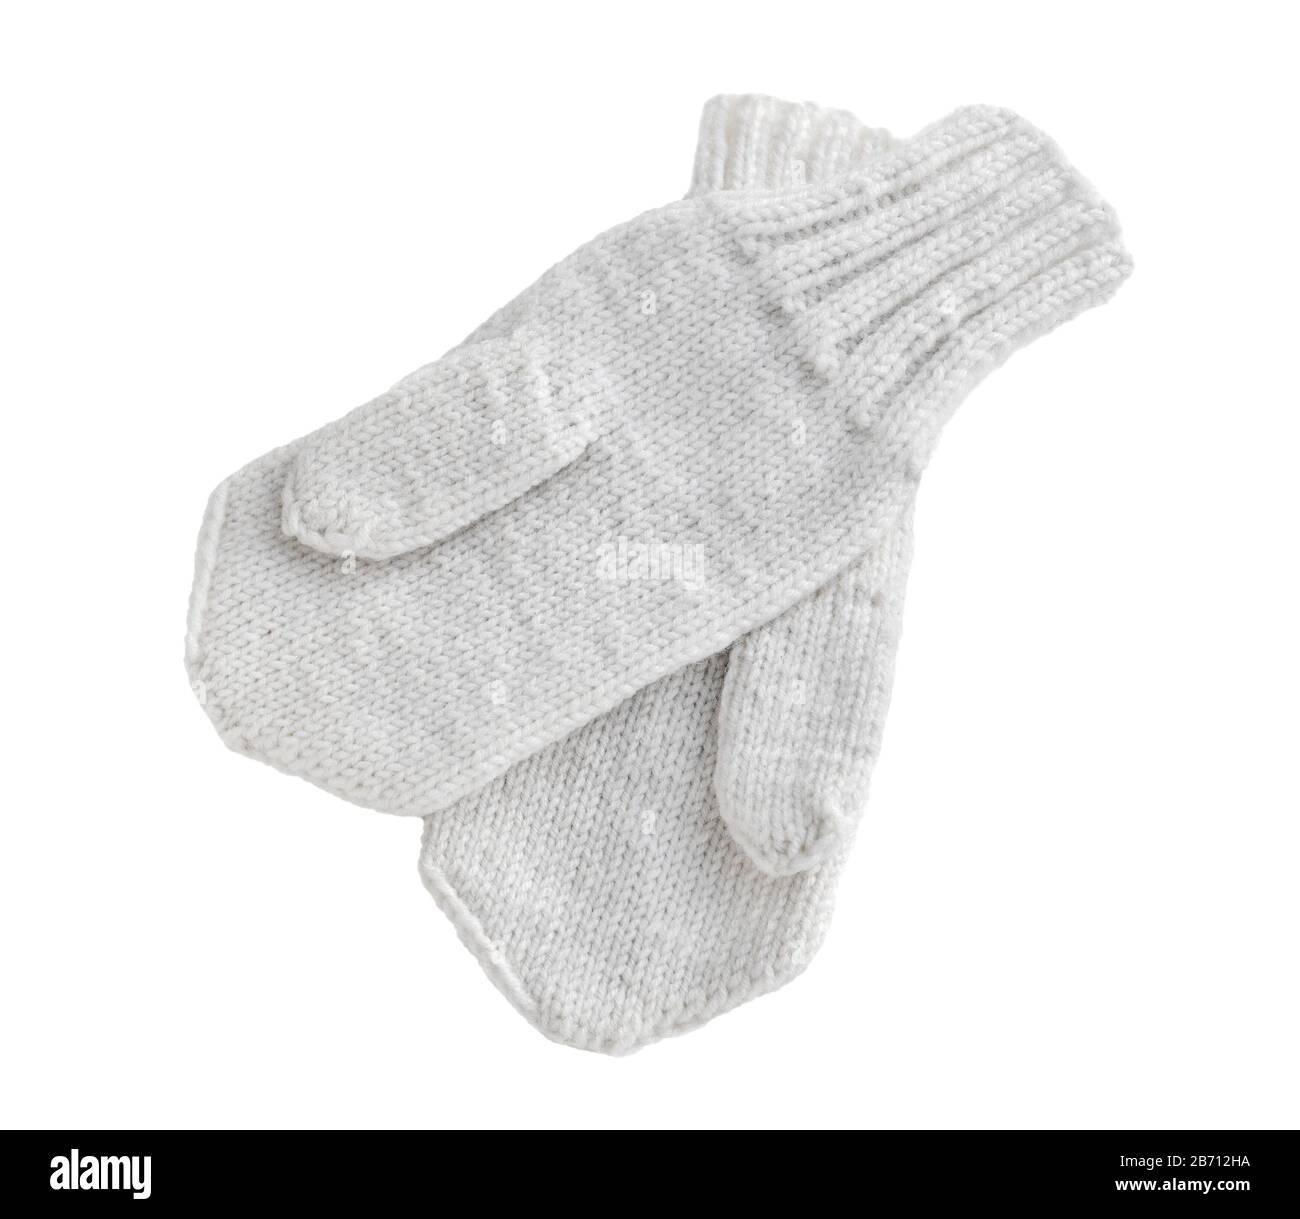 Handschuh mit Handschuhen isoliert auf weißem Hintergrund. Warme, aus Wolle gestrickte weiße Handschuhe mit Fäueln. Winterhandschuh. Stockfoto